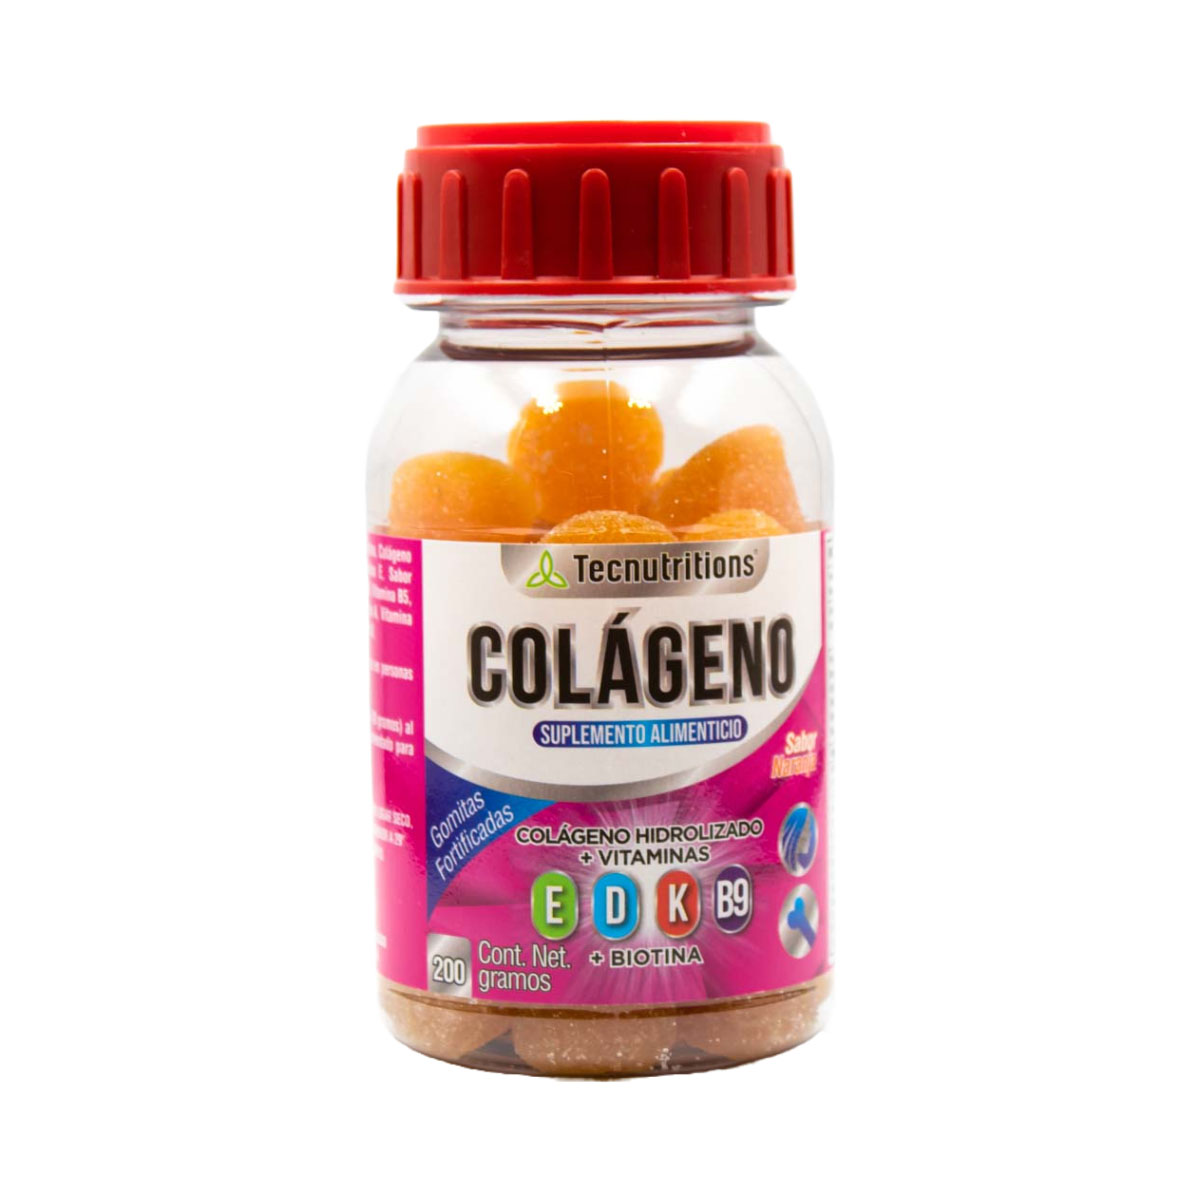 Suplemento alimenticio Gomitas de Colágeno, 200 gr, con colágeno hidrolizado, maltodextrina, vitamina e